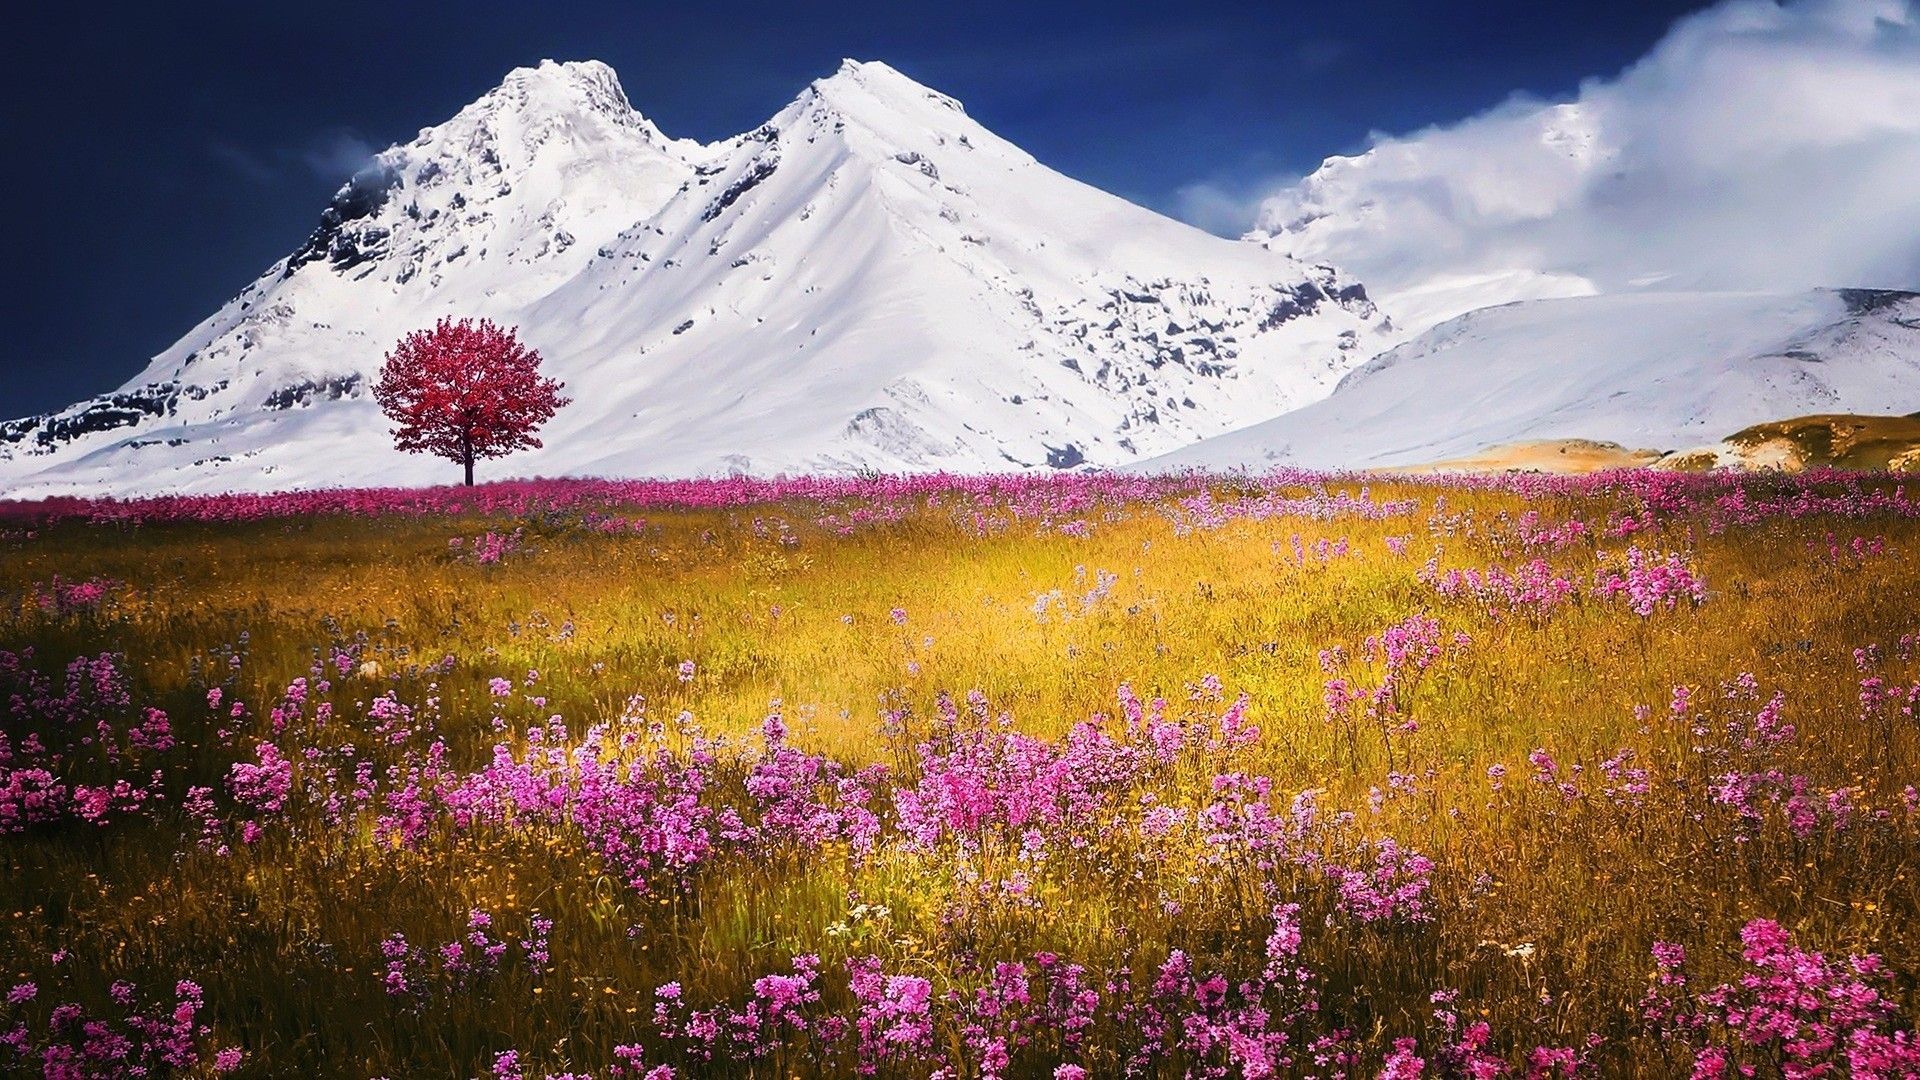 巍巍群山无人之境秀丽雪峰唯美风景图片壁纸